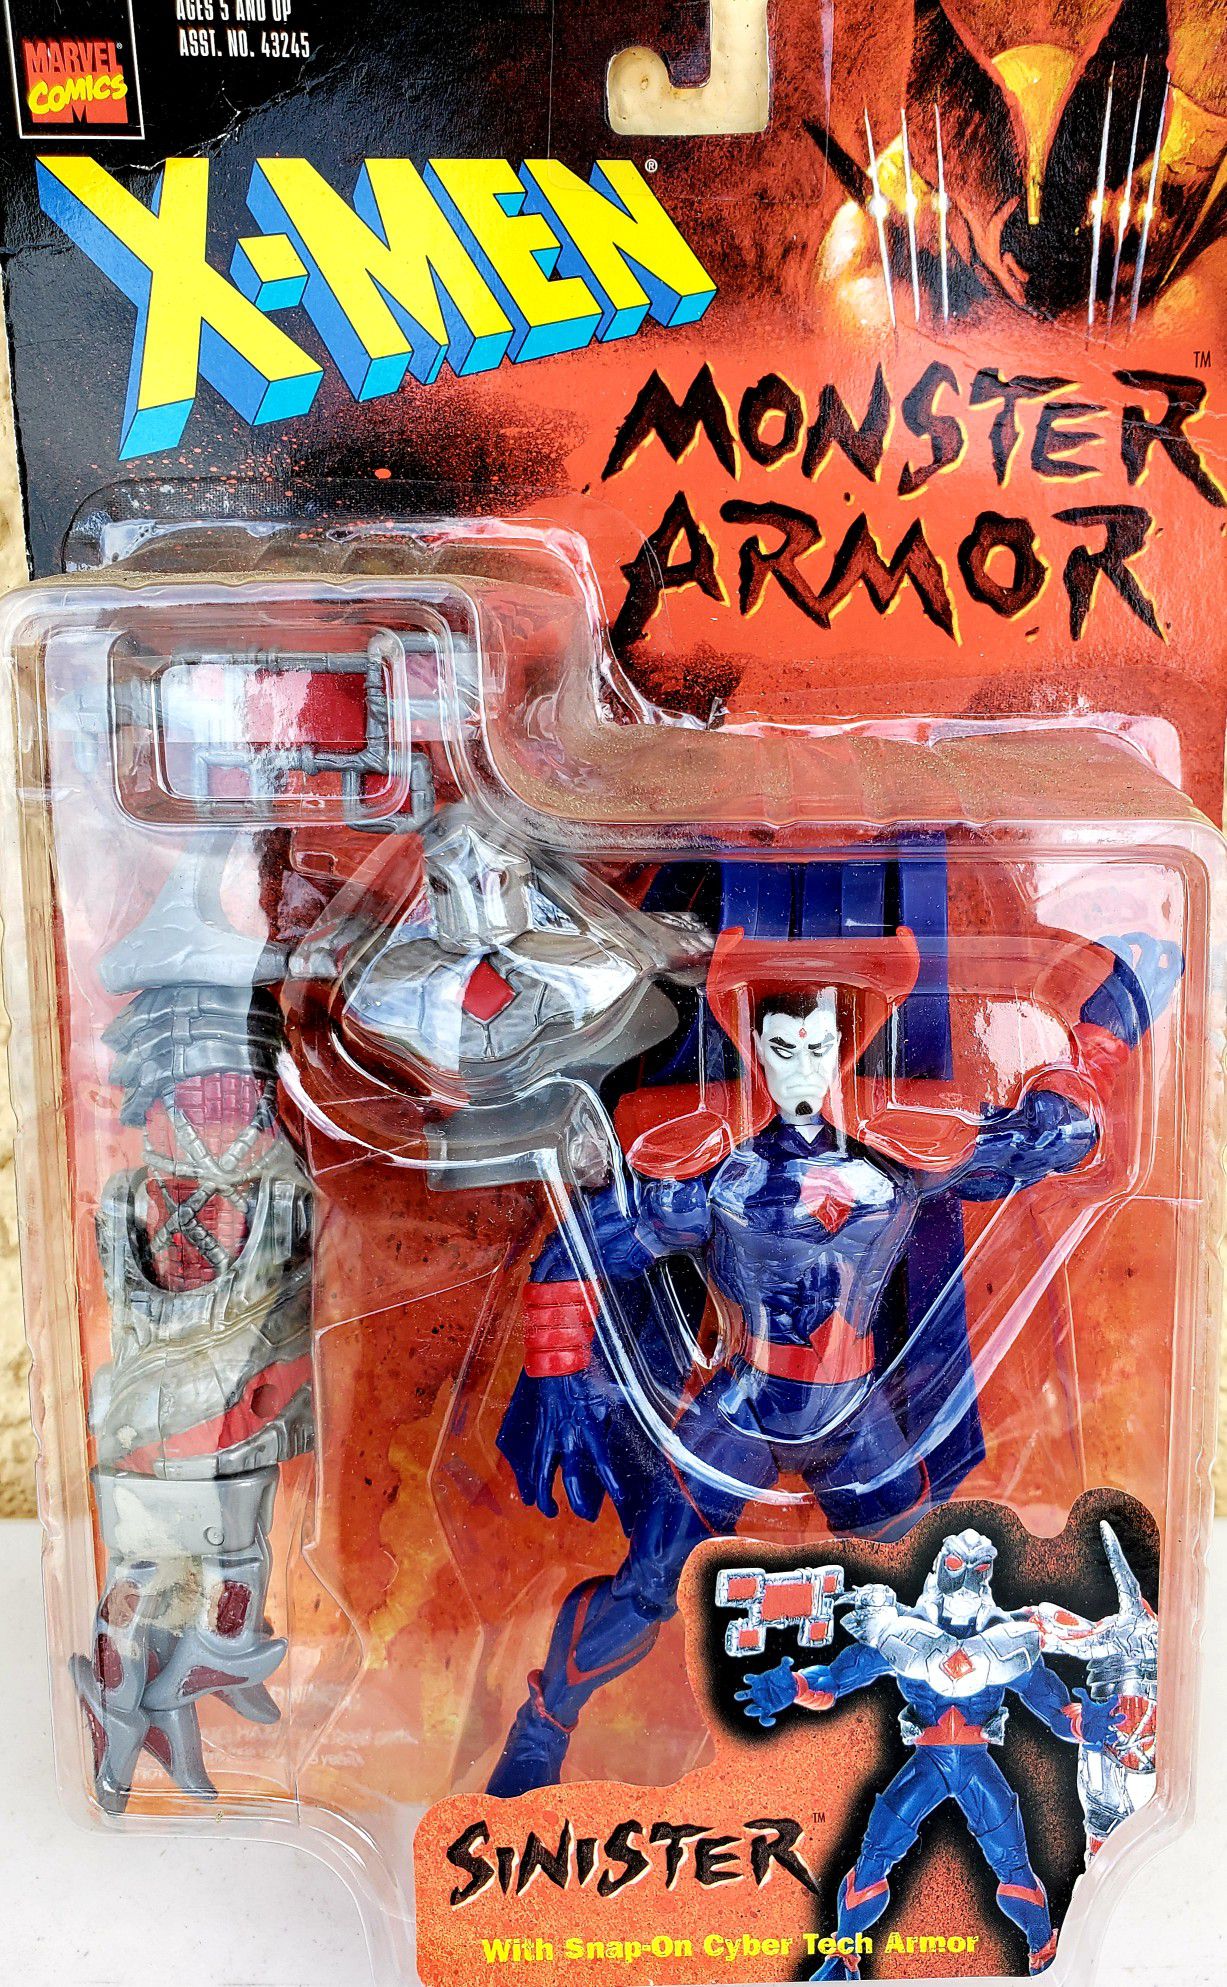 MR. SINISTER X-Men Monster Armor Action Figure